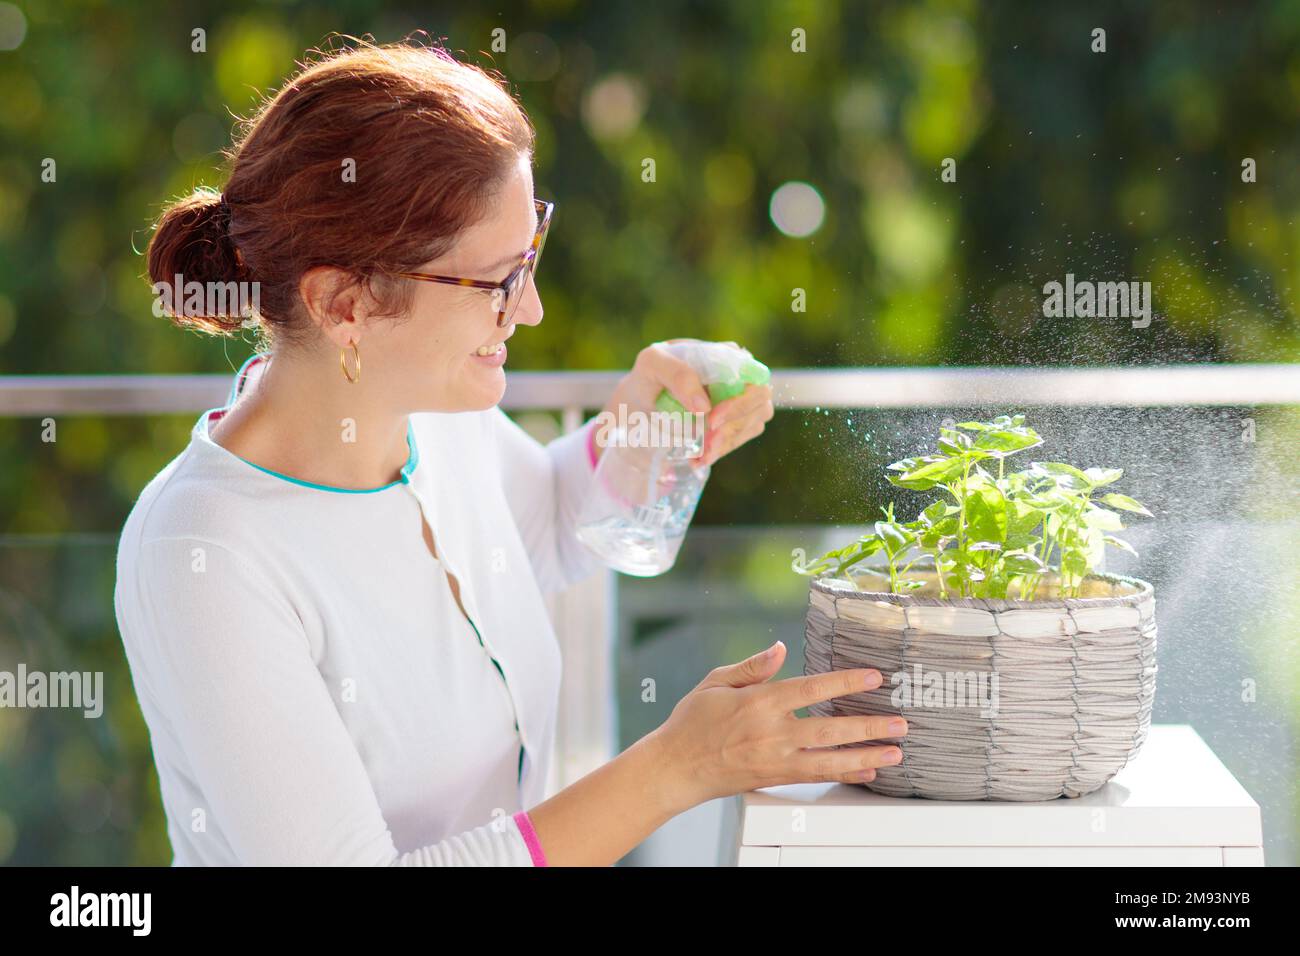 Eine Frau, die Balkonpflanzen bewässert. Kräutergarten auf der Terrasse. Junge Frau, die Wasser auf Topfkräuter spritzt. Basil in einem Topf auf der Apartmentterrasse. Stockfoto